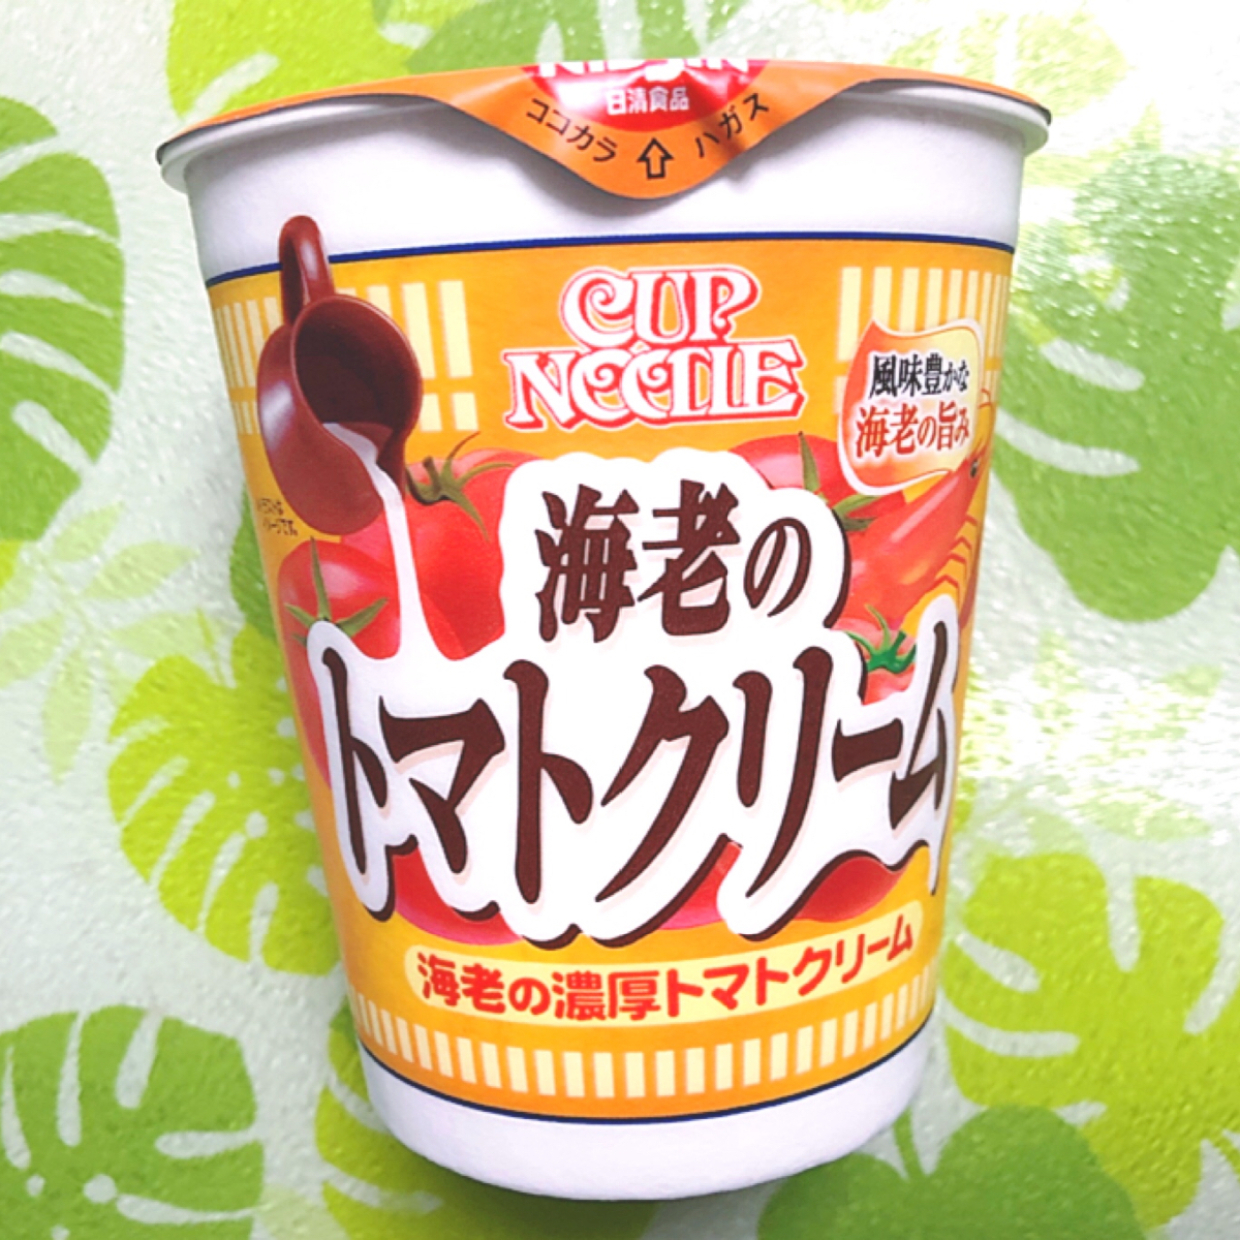  【カップヌードル】「海老の濃厚トマトクリーム」がまるでパスタのような濃厚さで美味しすぎ♡ 